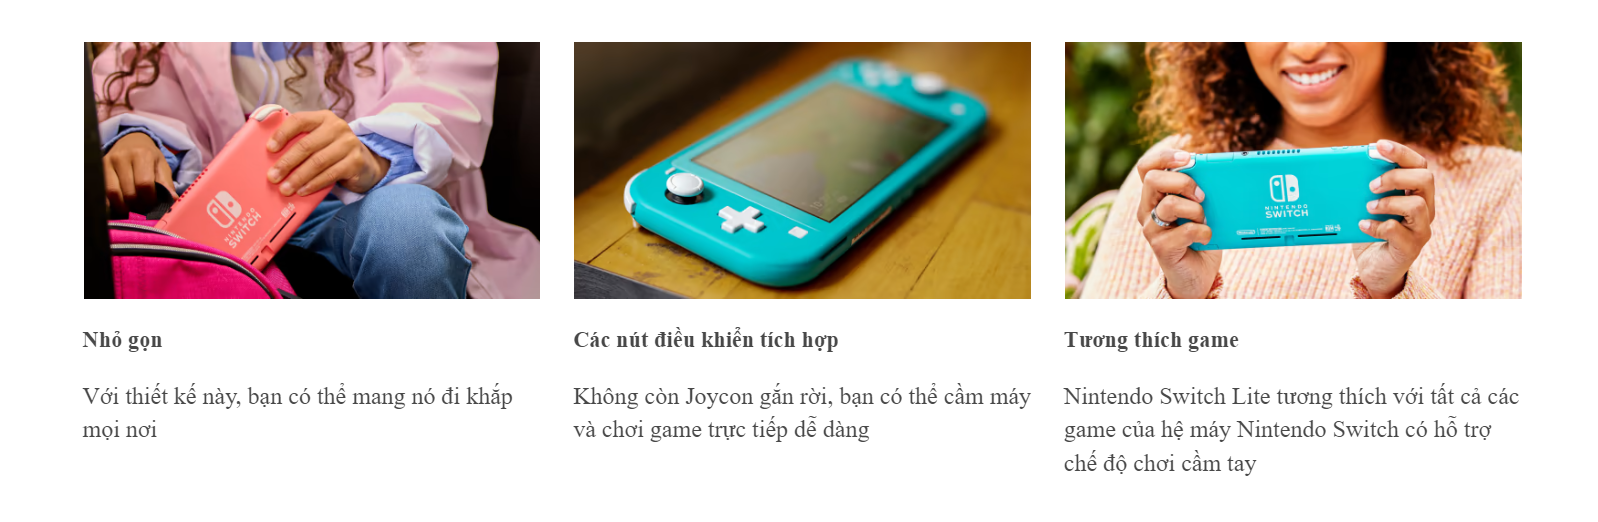 Máy chơi game Nintendo Switch Lite - Turquoise - Màu xanh ngọc 3